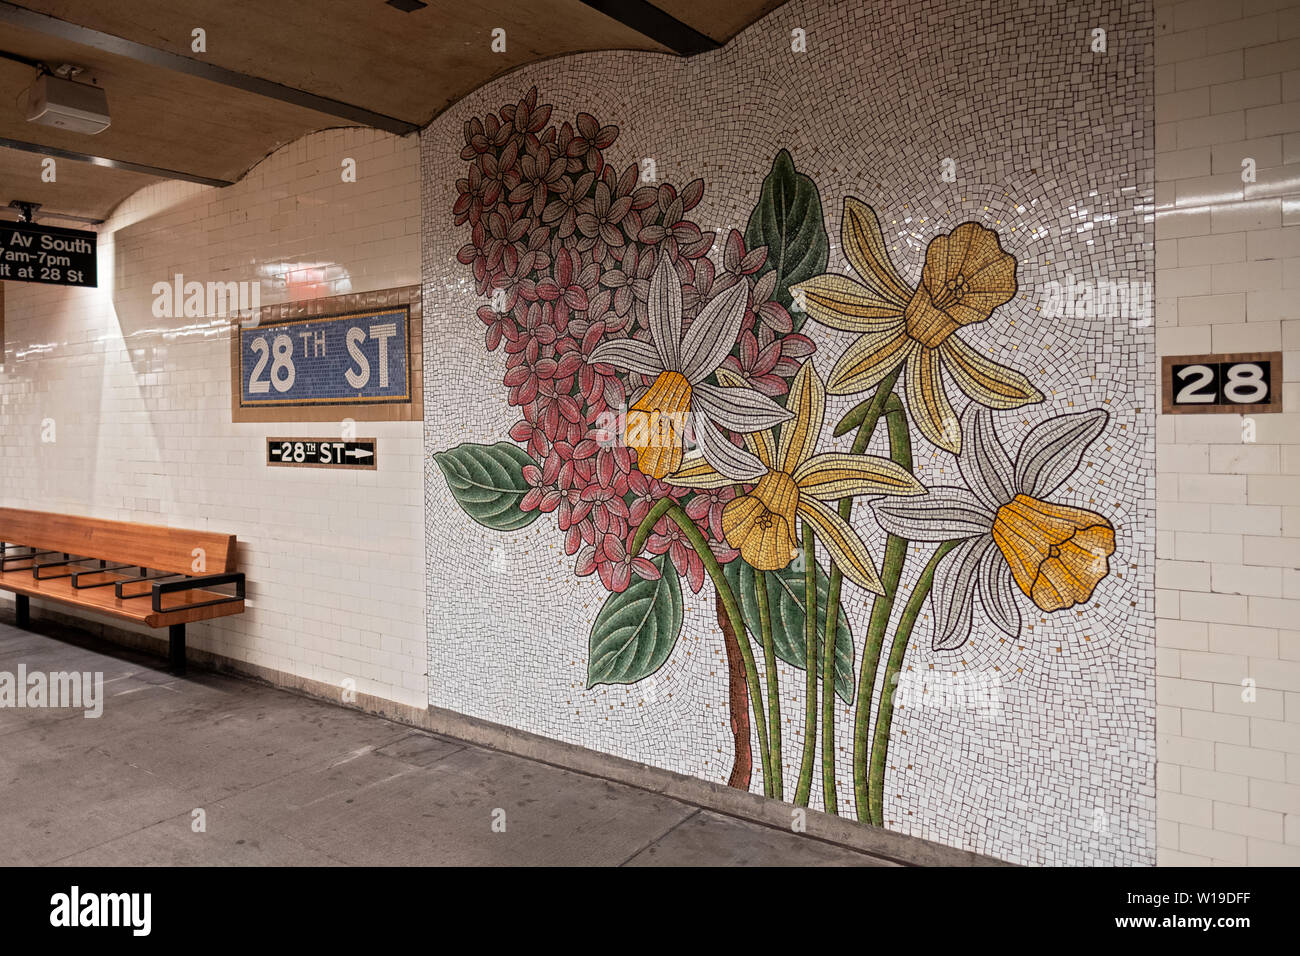 Belle mosaïque murale floral à l'East 28th Street station de métro sur la ligne numéro 6 à Manhattan, New York City. Banque D'Images